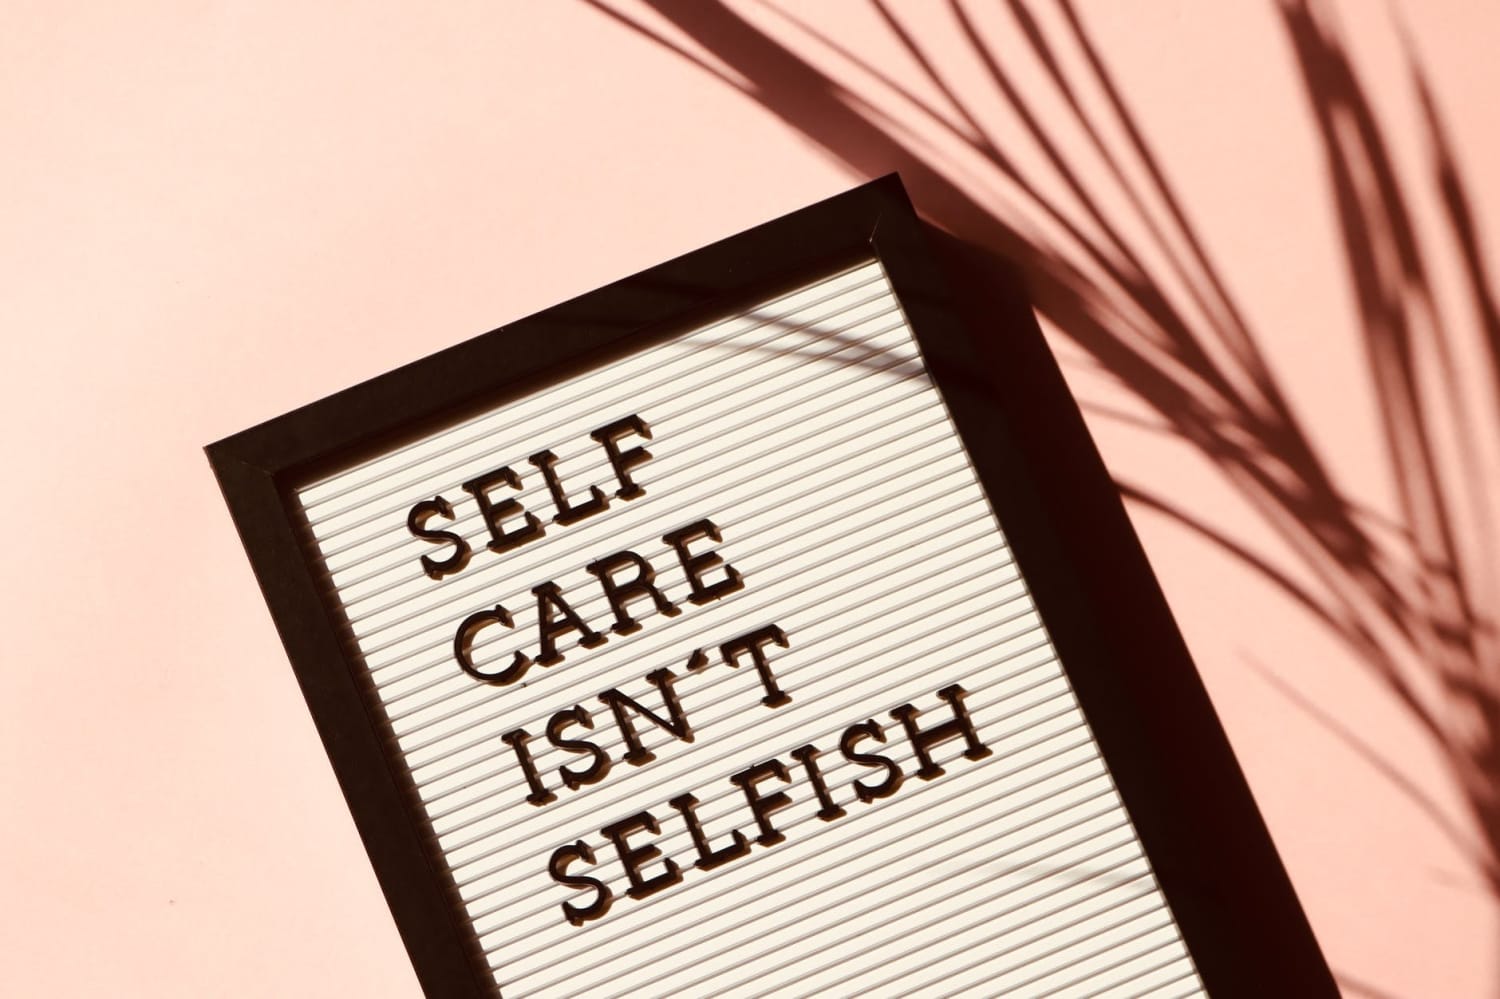 Self-care isn't selfish!